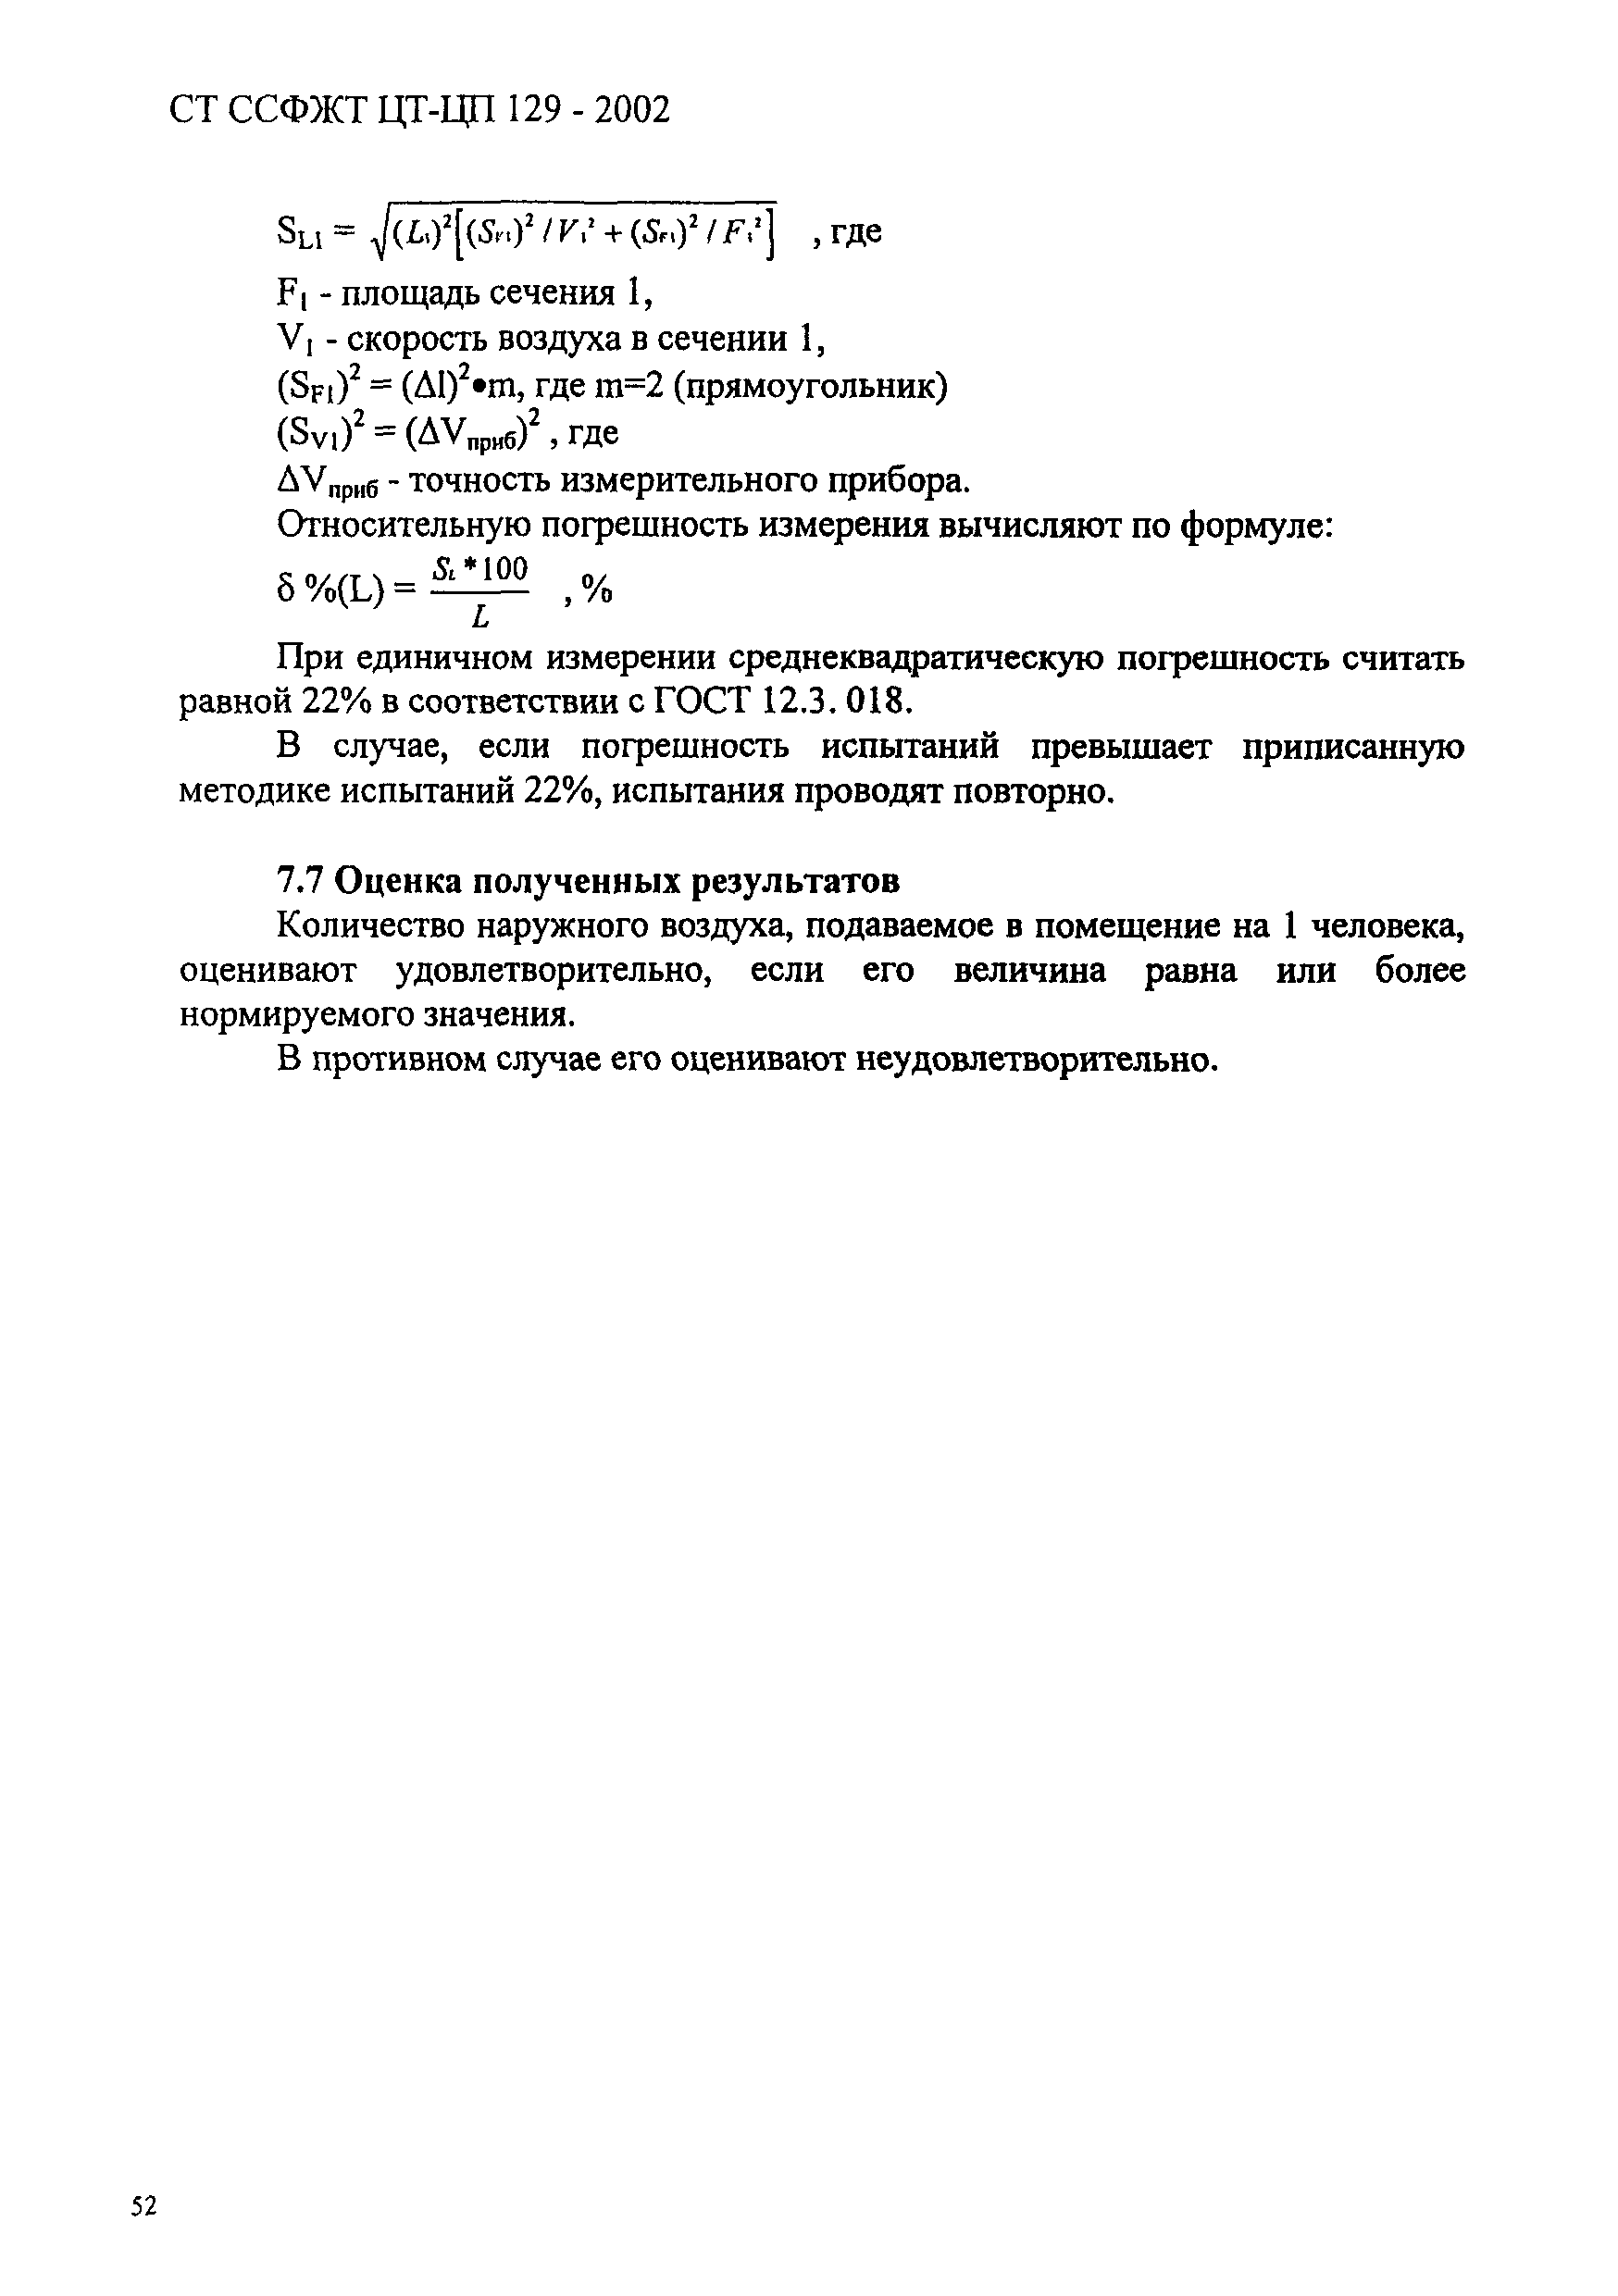 СТ ССФЖТ ЦТ-ЦП 129-2002